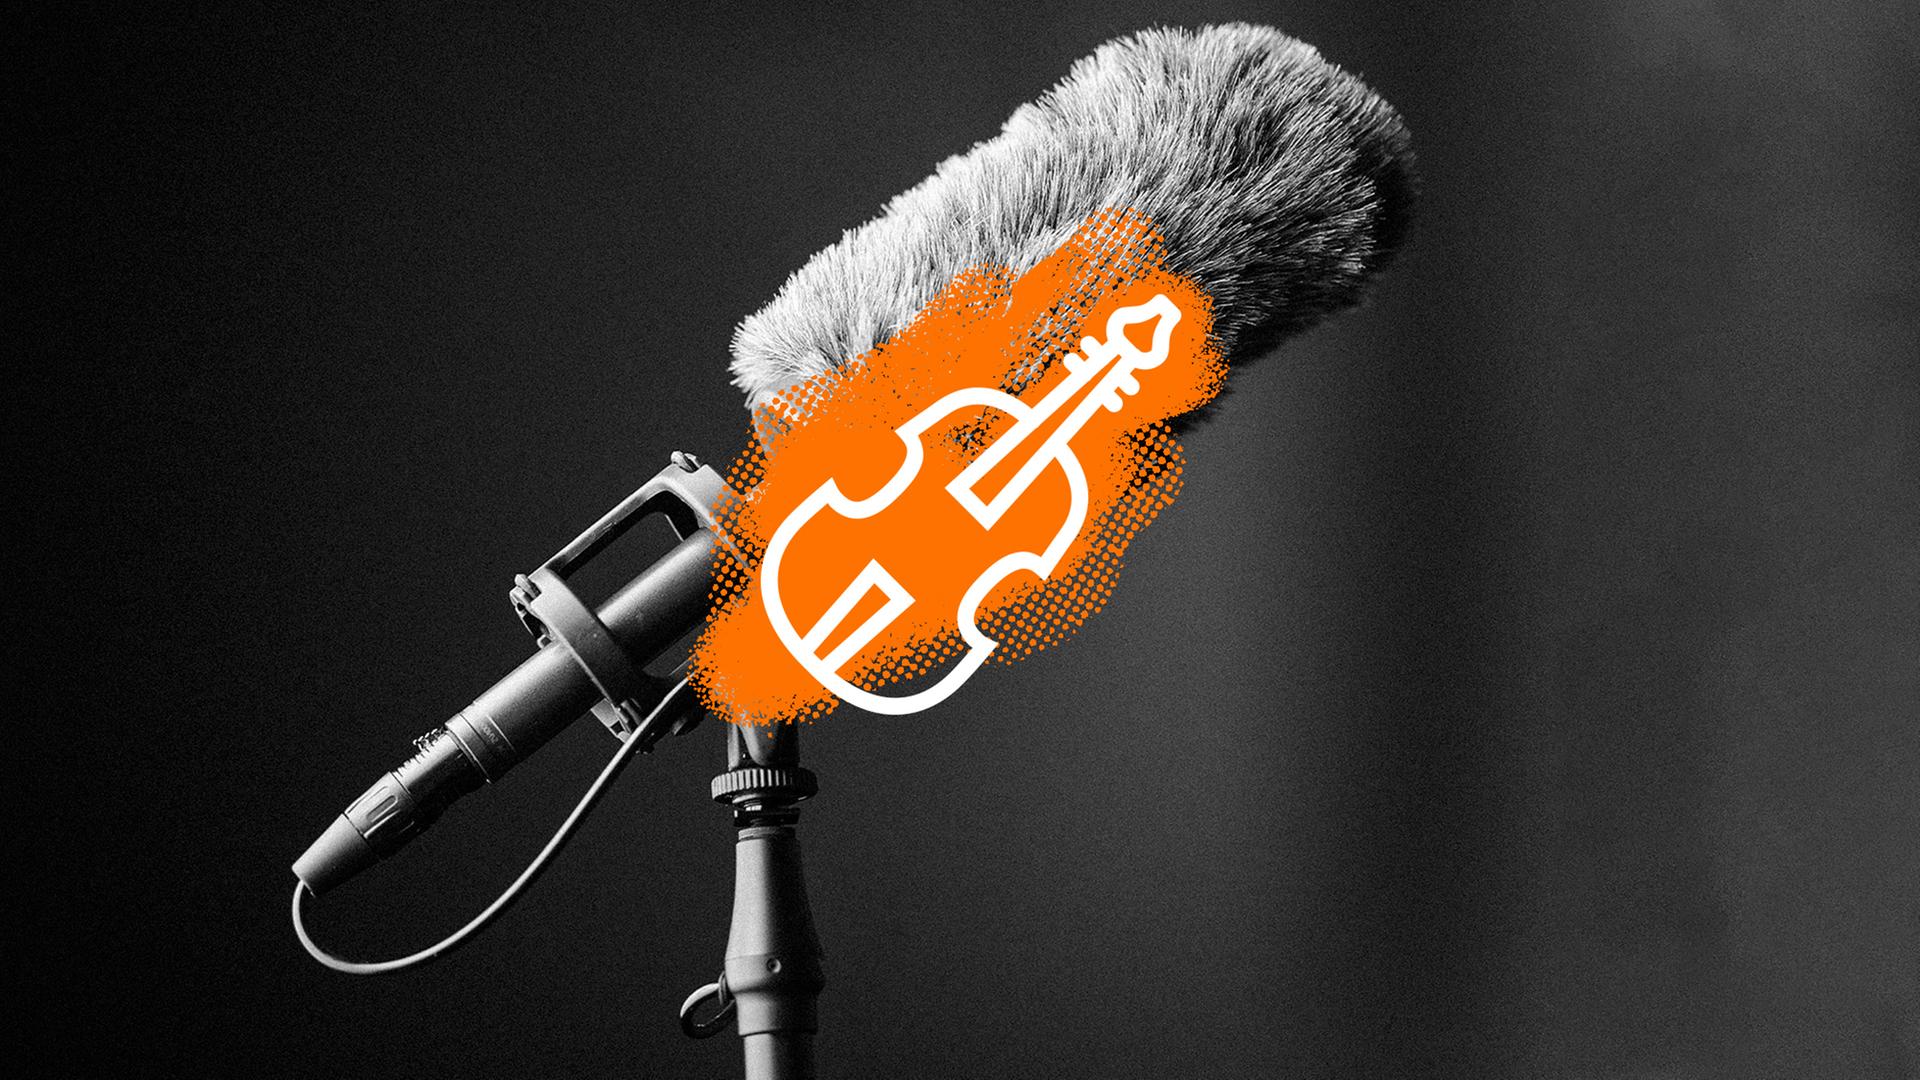 Zu sehen: Eine Collage mit einem Mikrofon für Außenaufnahmen und einer gezeichneten Gitarre (in weiß mit orangenem Hintergrund) darüber.